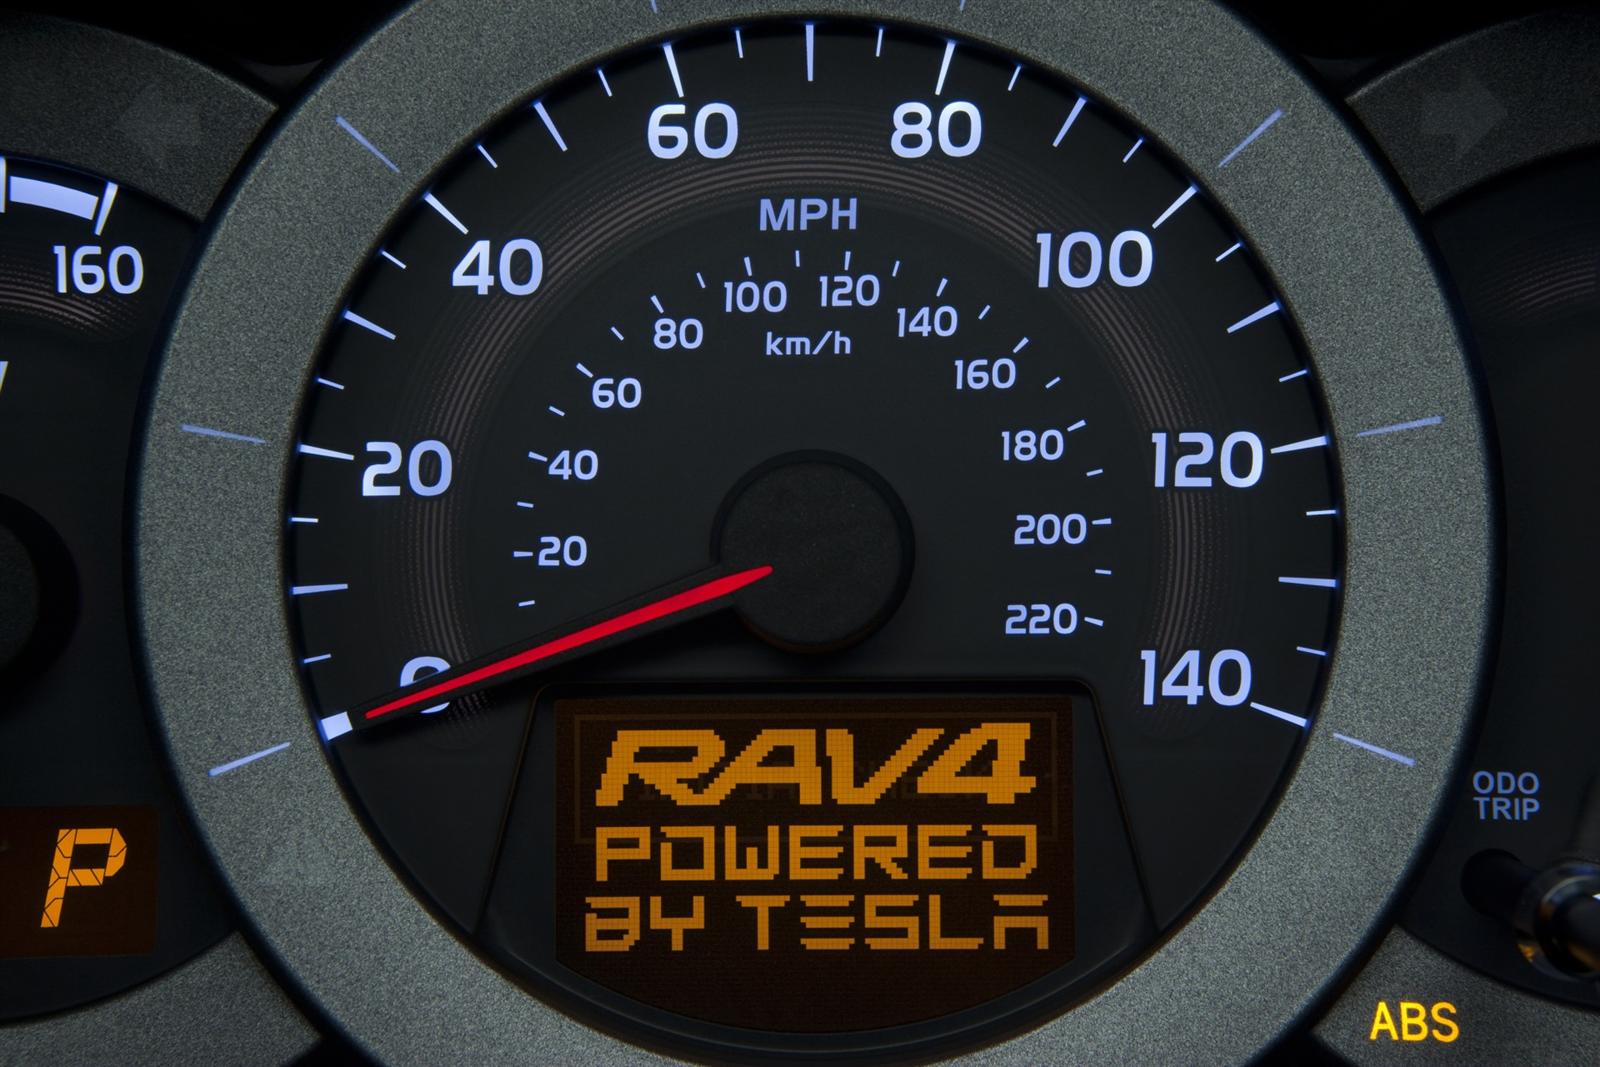 2011 Toyota RAV4 EV Demonstration Vehicle